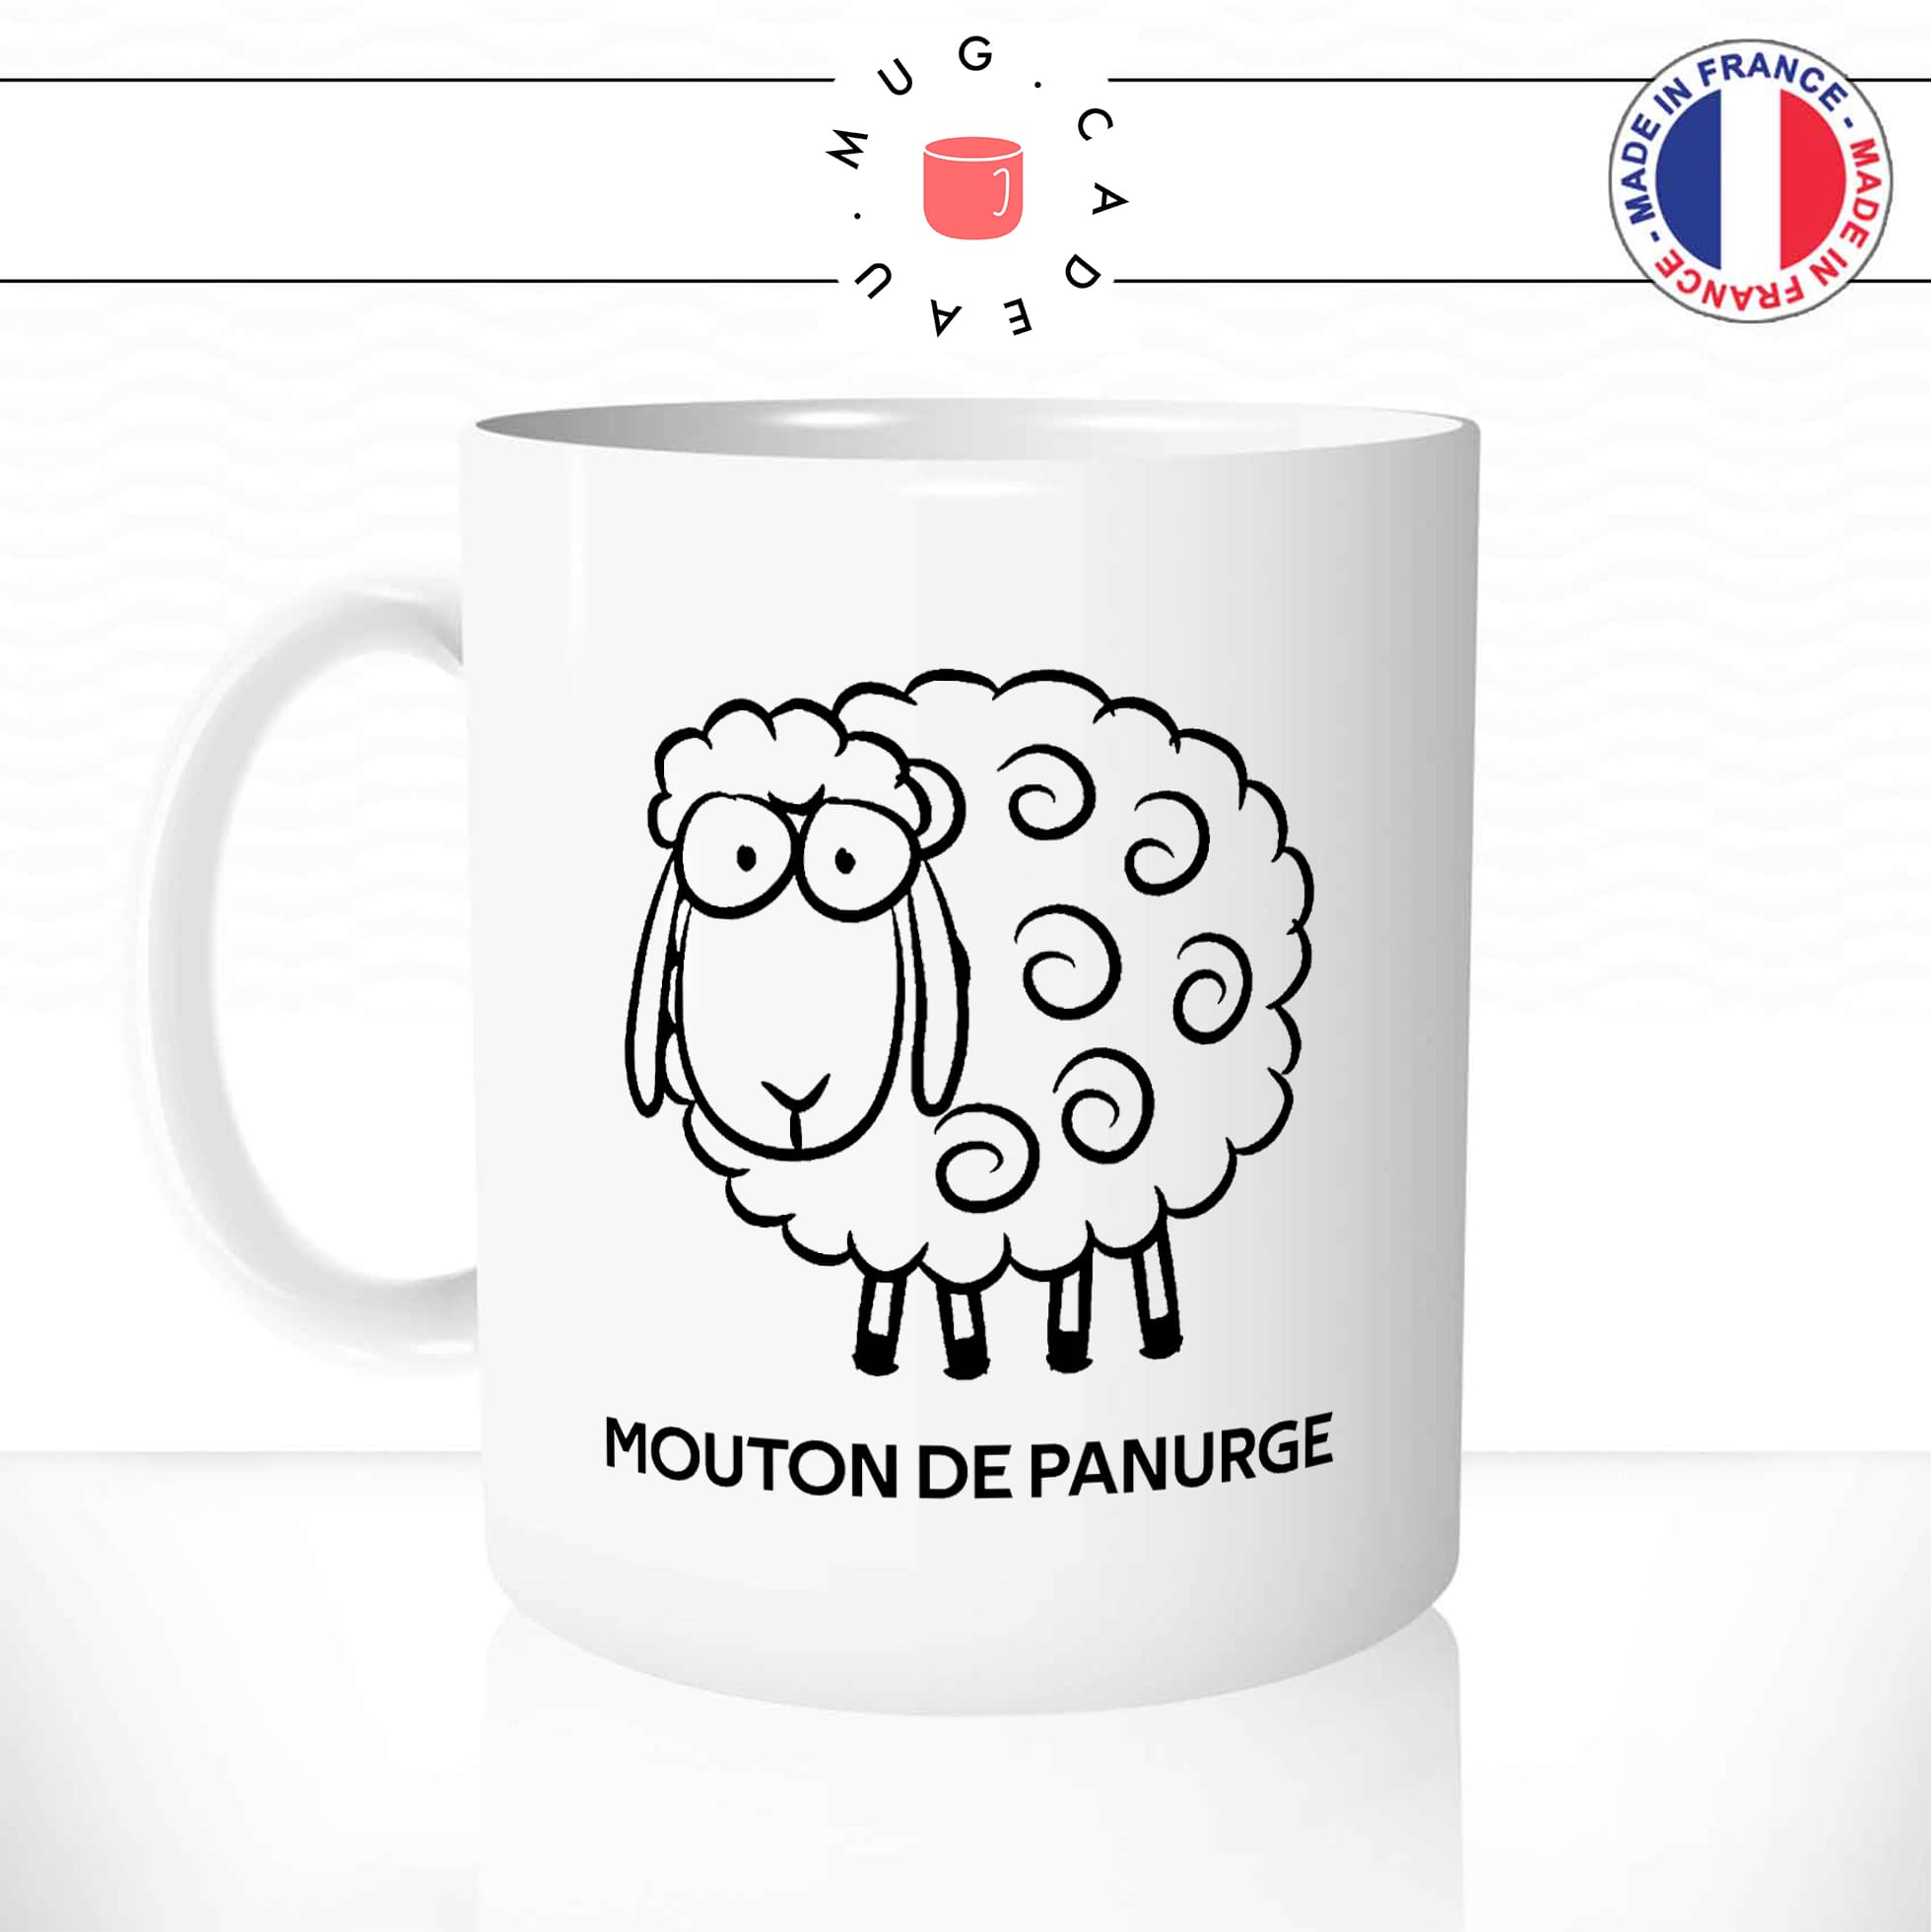 mug-tasse-blanc-mouton-de-panurge-suiveur-politique-société-bete-con-gilet-jaune-humour-fun-idée-cadeau-originale-cool